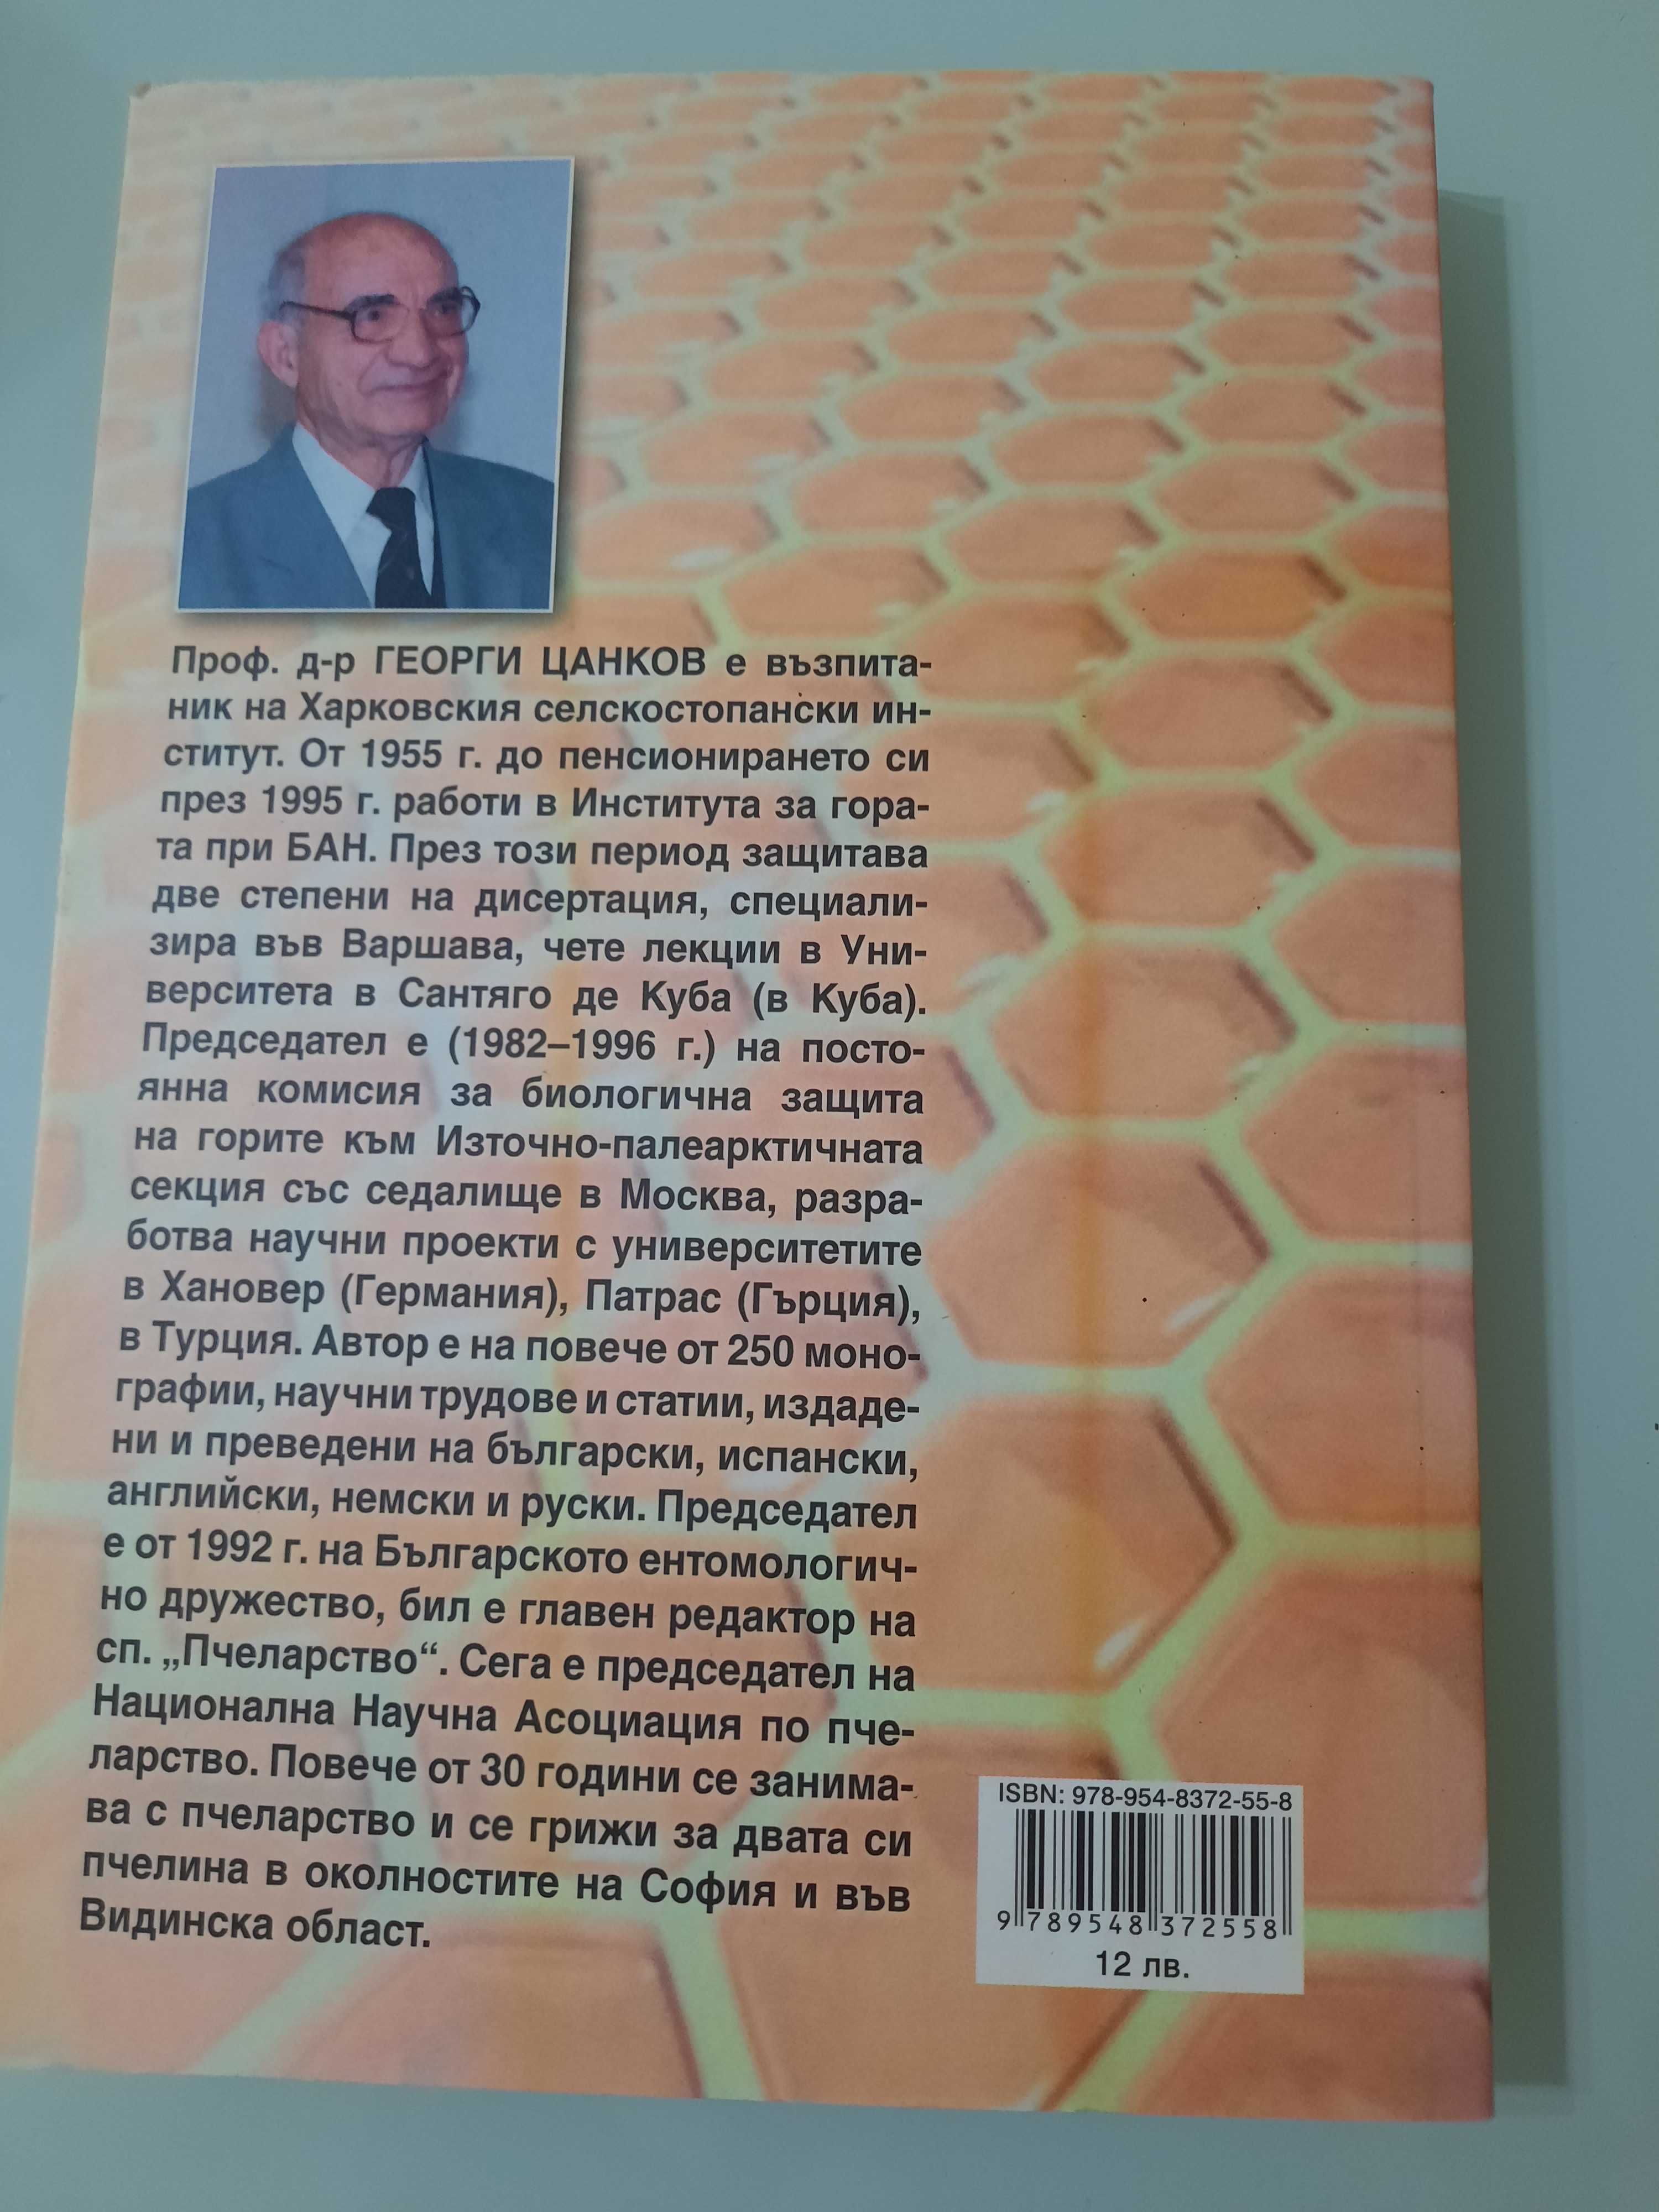 Отглеждане на пчели е митоди за високи добиви -Георги Цанков